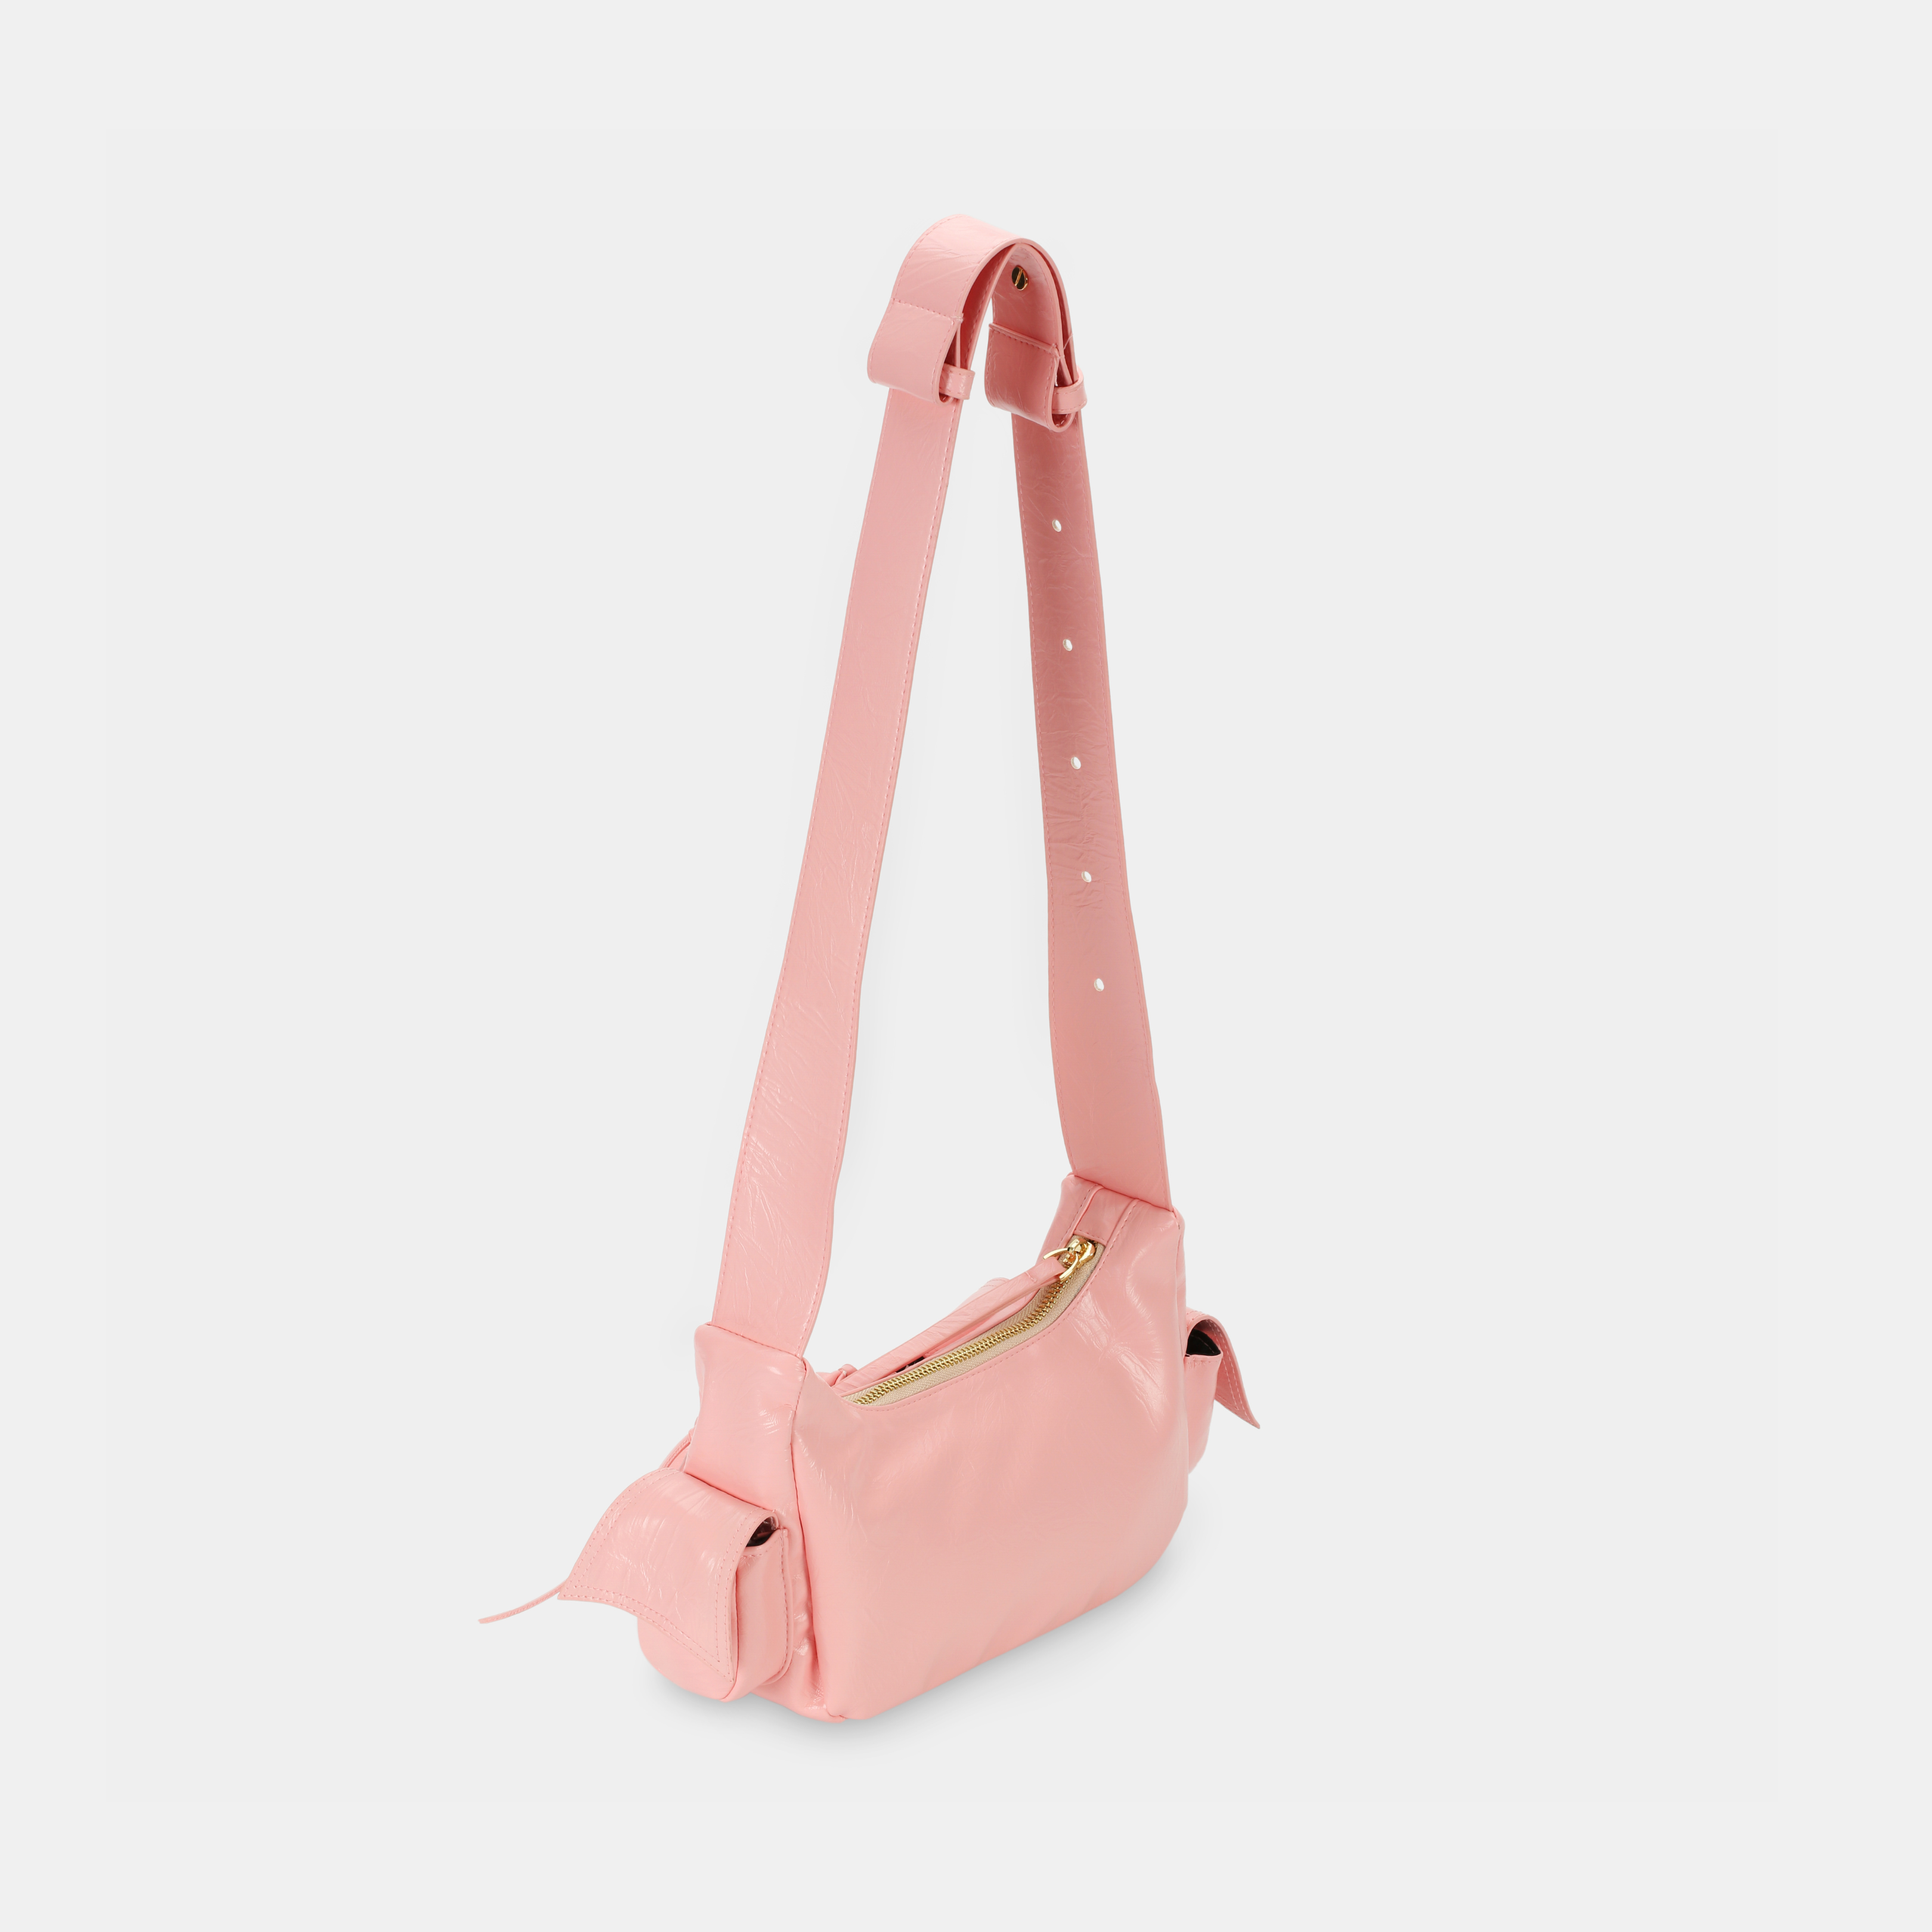 Túi xách C5-Pocket size nhỏ (S) màu hồng